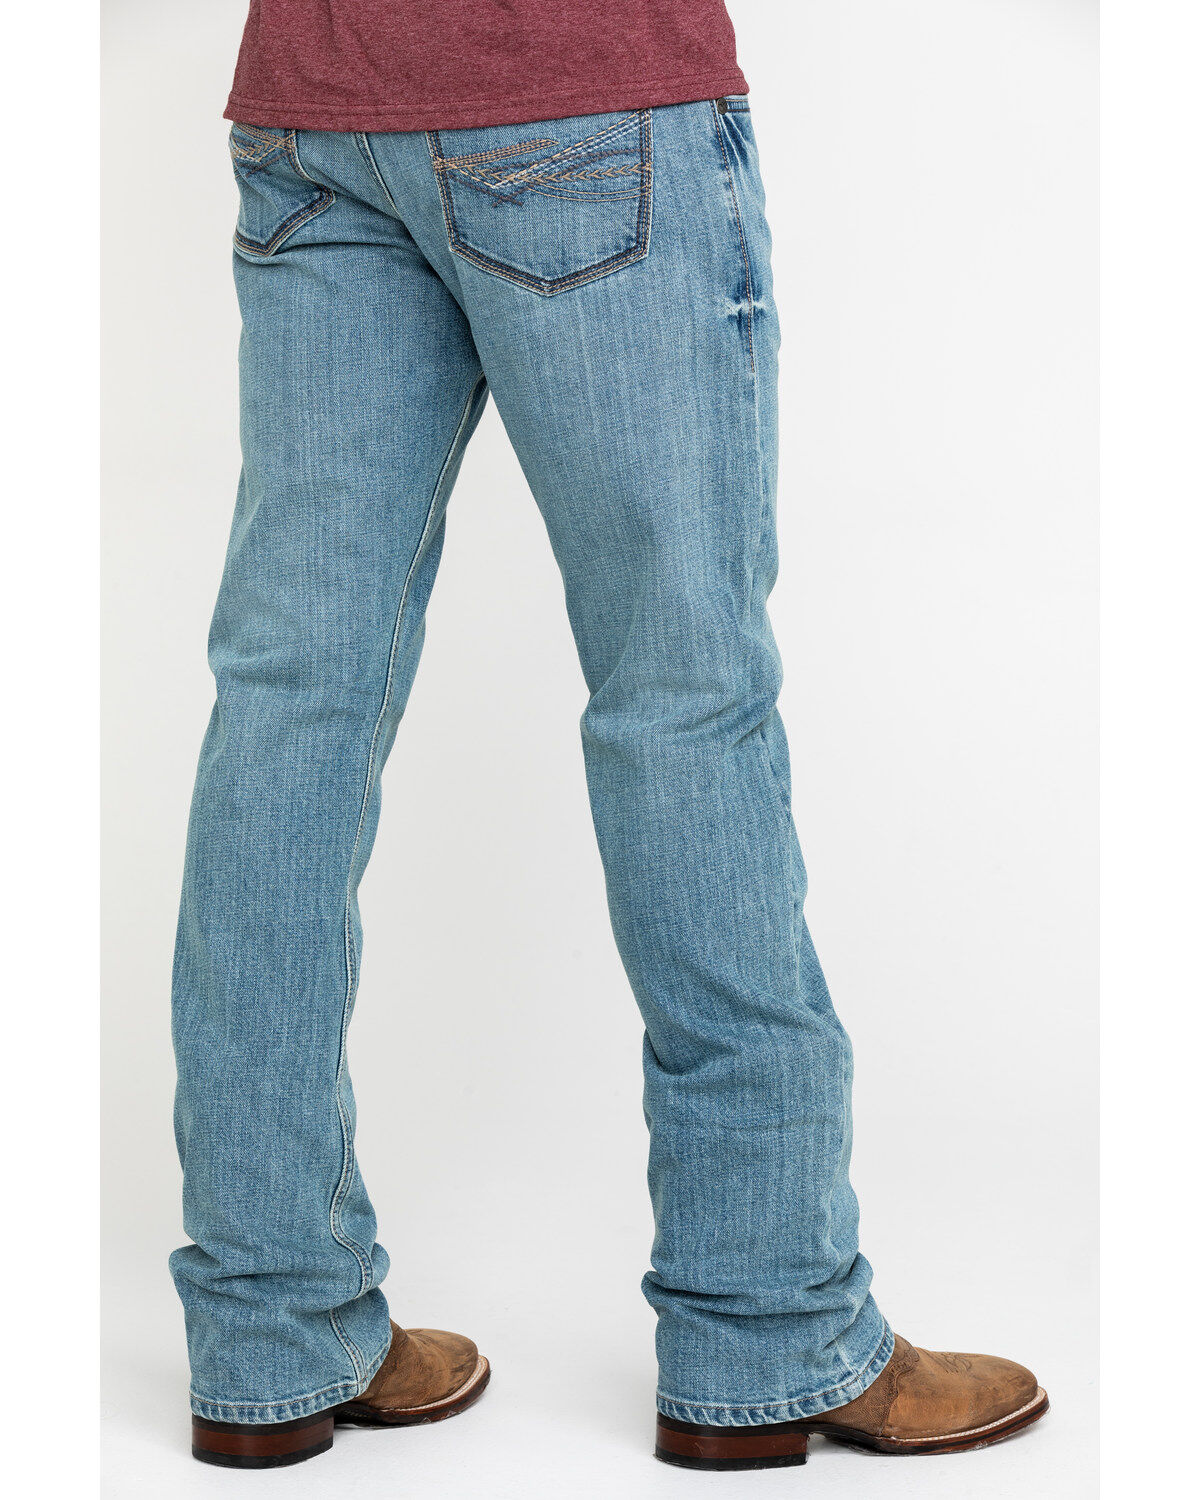 wrangler light jeans